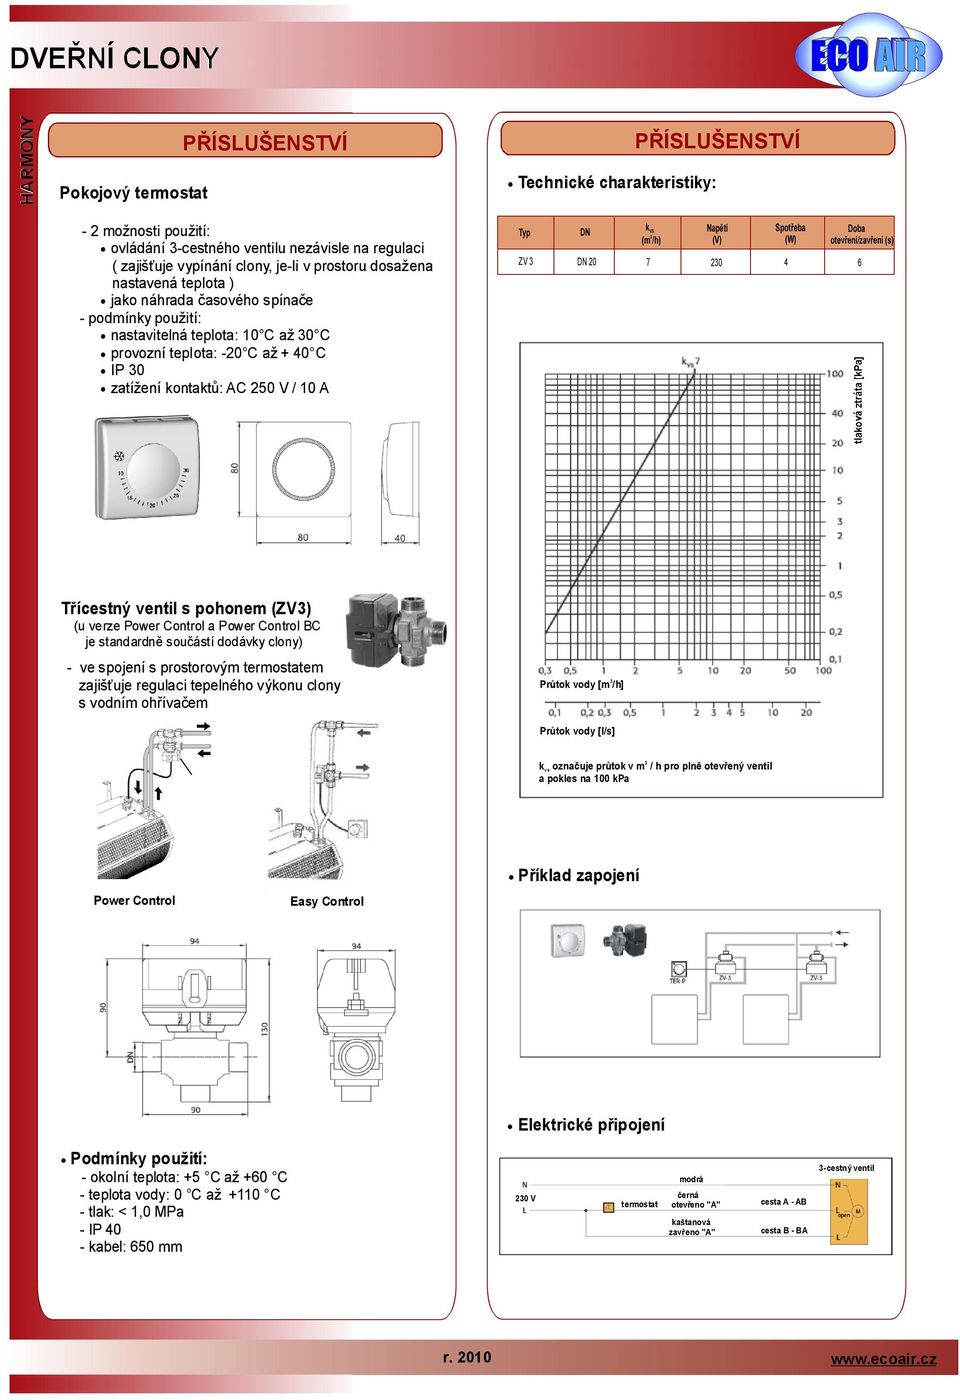 otevření/zavření (s) 6 Třícestný ventil spohonem (ZV) (u verze Power Control apowercontrol BC je standardně součástídodávkyclony) vespojení sprostorovým termostatem zajišťuje regulaci tepelného u